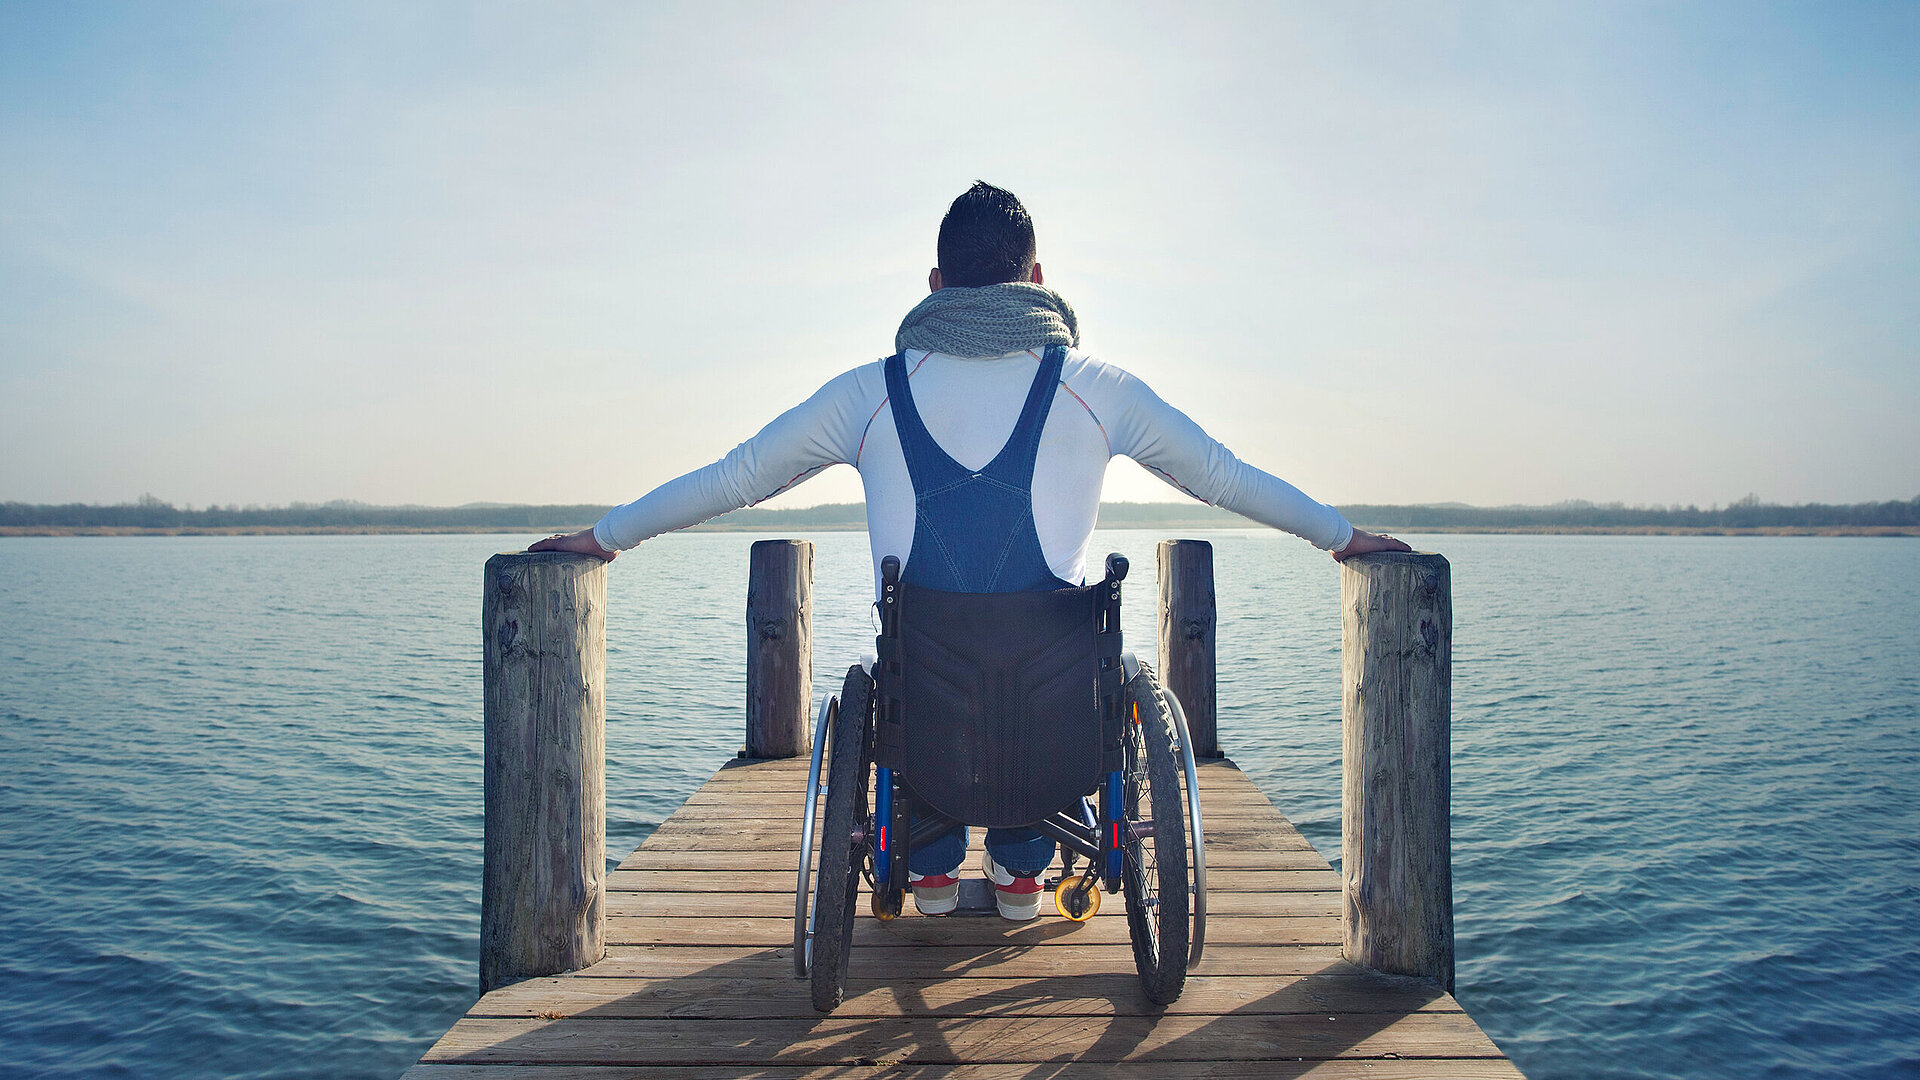 Auf einem Steg an einem See sitze ein Mann im Rollstuhl und berührt rechts und links die Pfosten. Das Bild steht symbolisch für den Bereich Barrierefreiheit